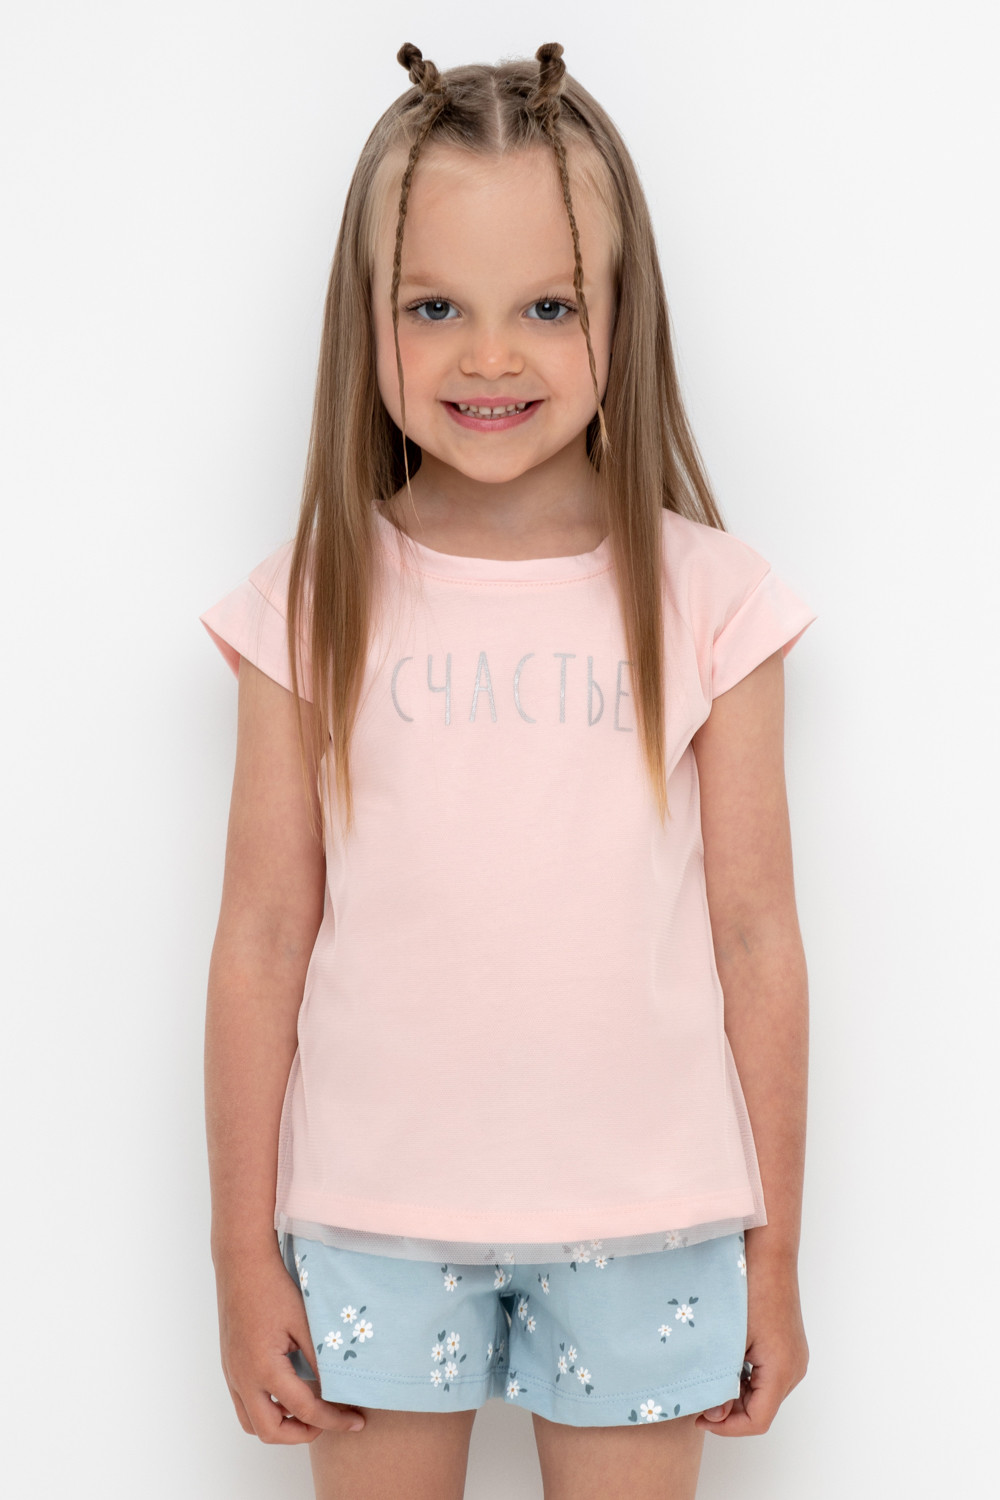 Детская футболка CROCKID, размер М, артикул 2759, цвет светло-розовый, подходящий рост 110 см.